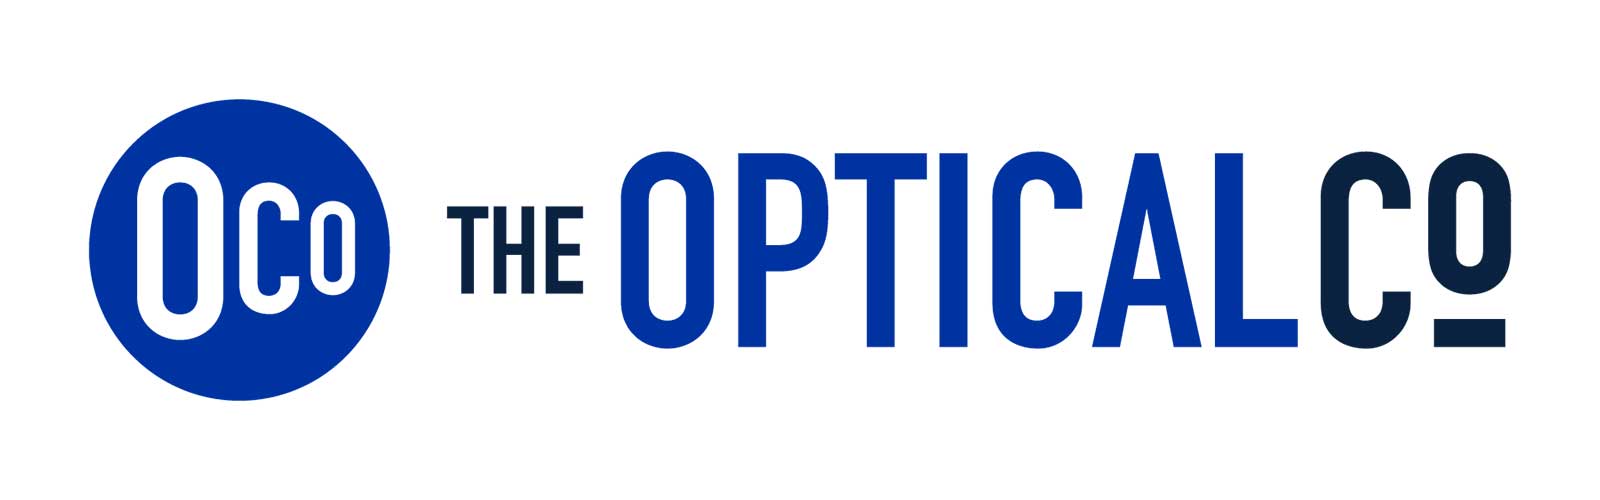 The Optical Co Logo